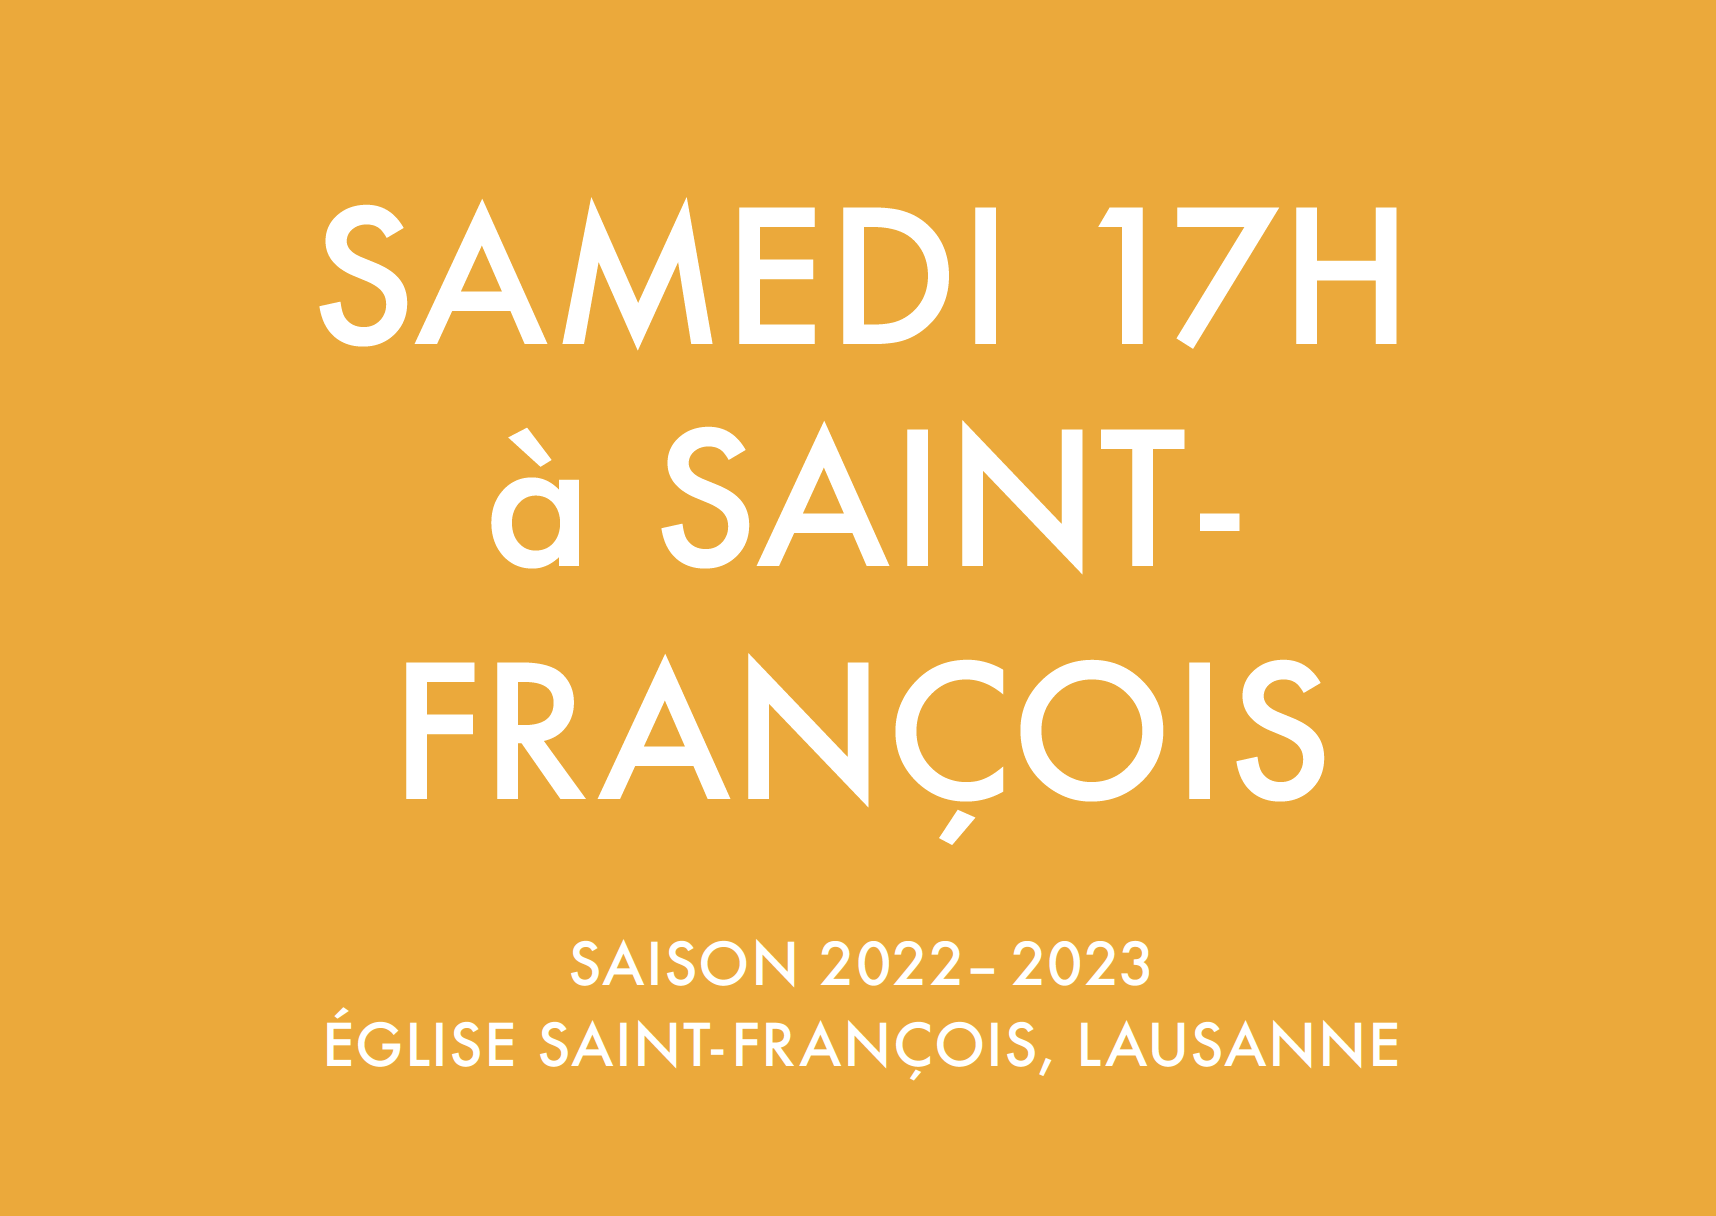 SAISON 2022-2023 DES CONCERTS SAMEDI 17H